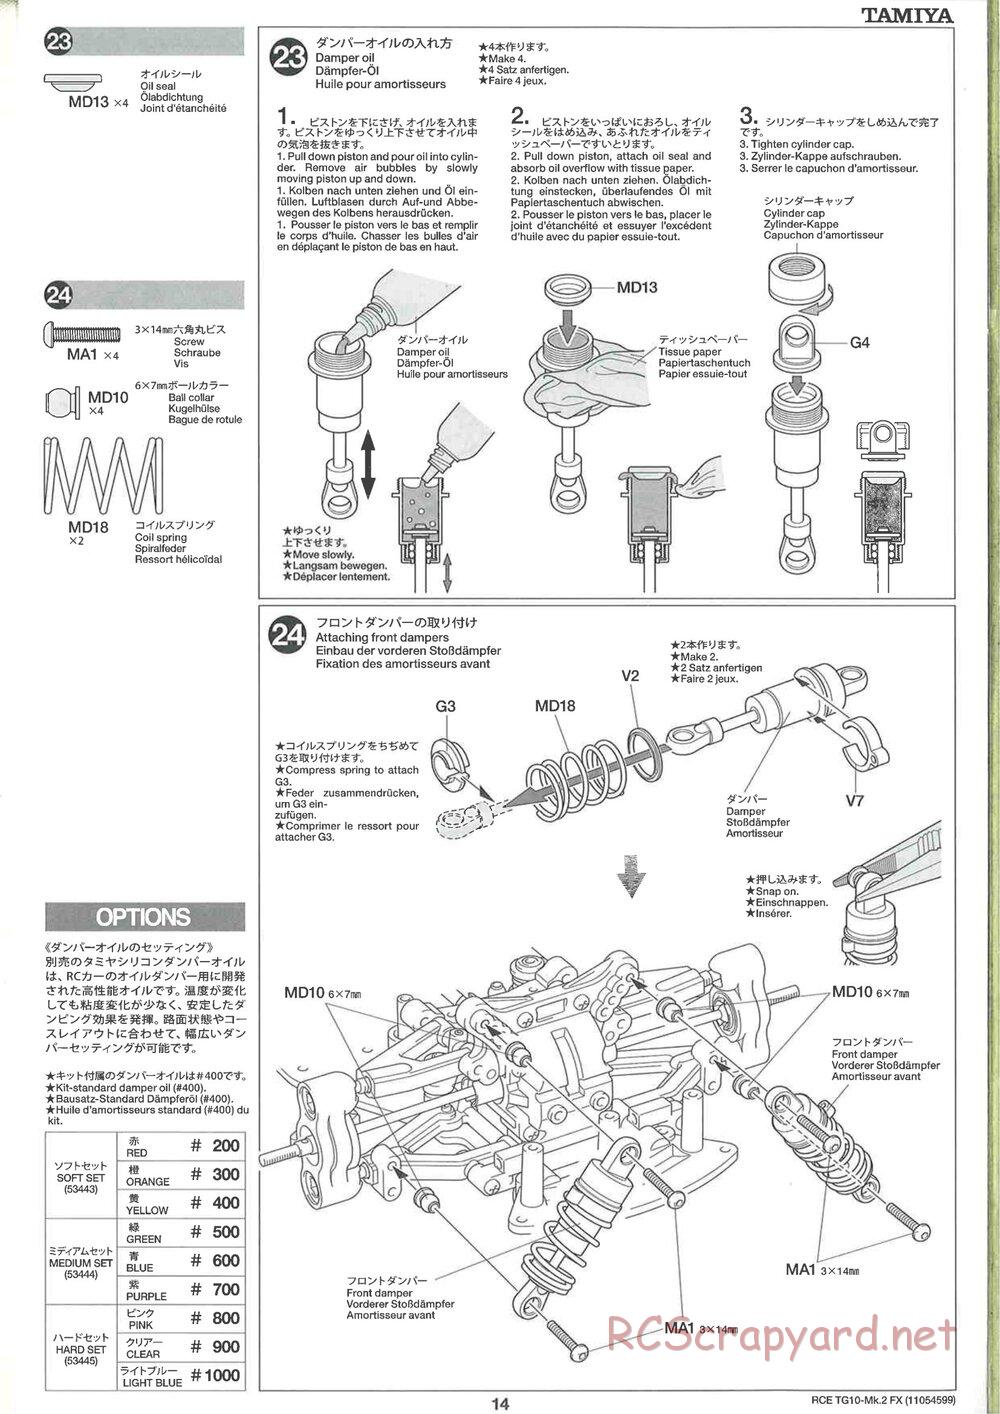 Tamiya - TG10 Mk.2 FX Chassis - Manual - Page 14